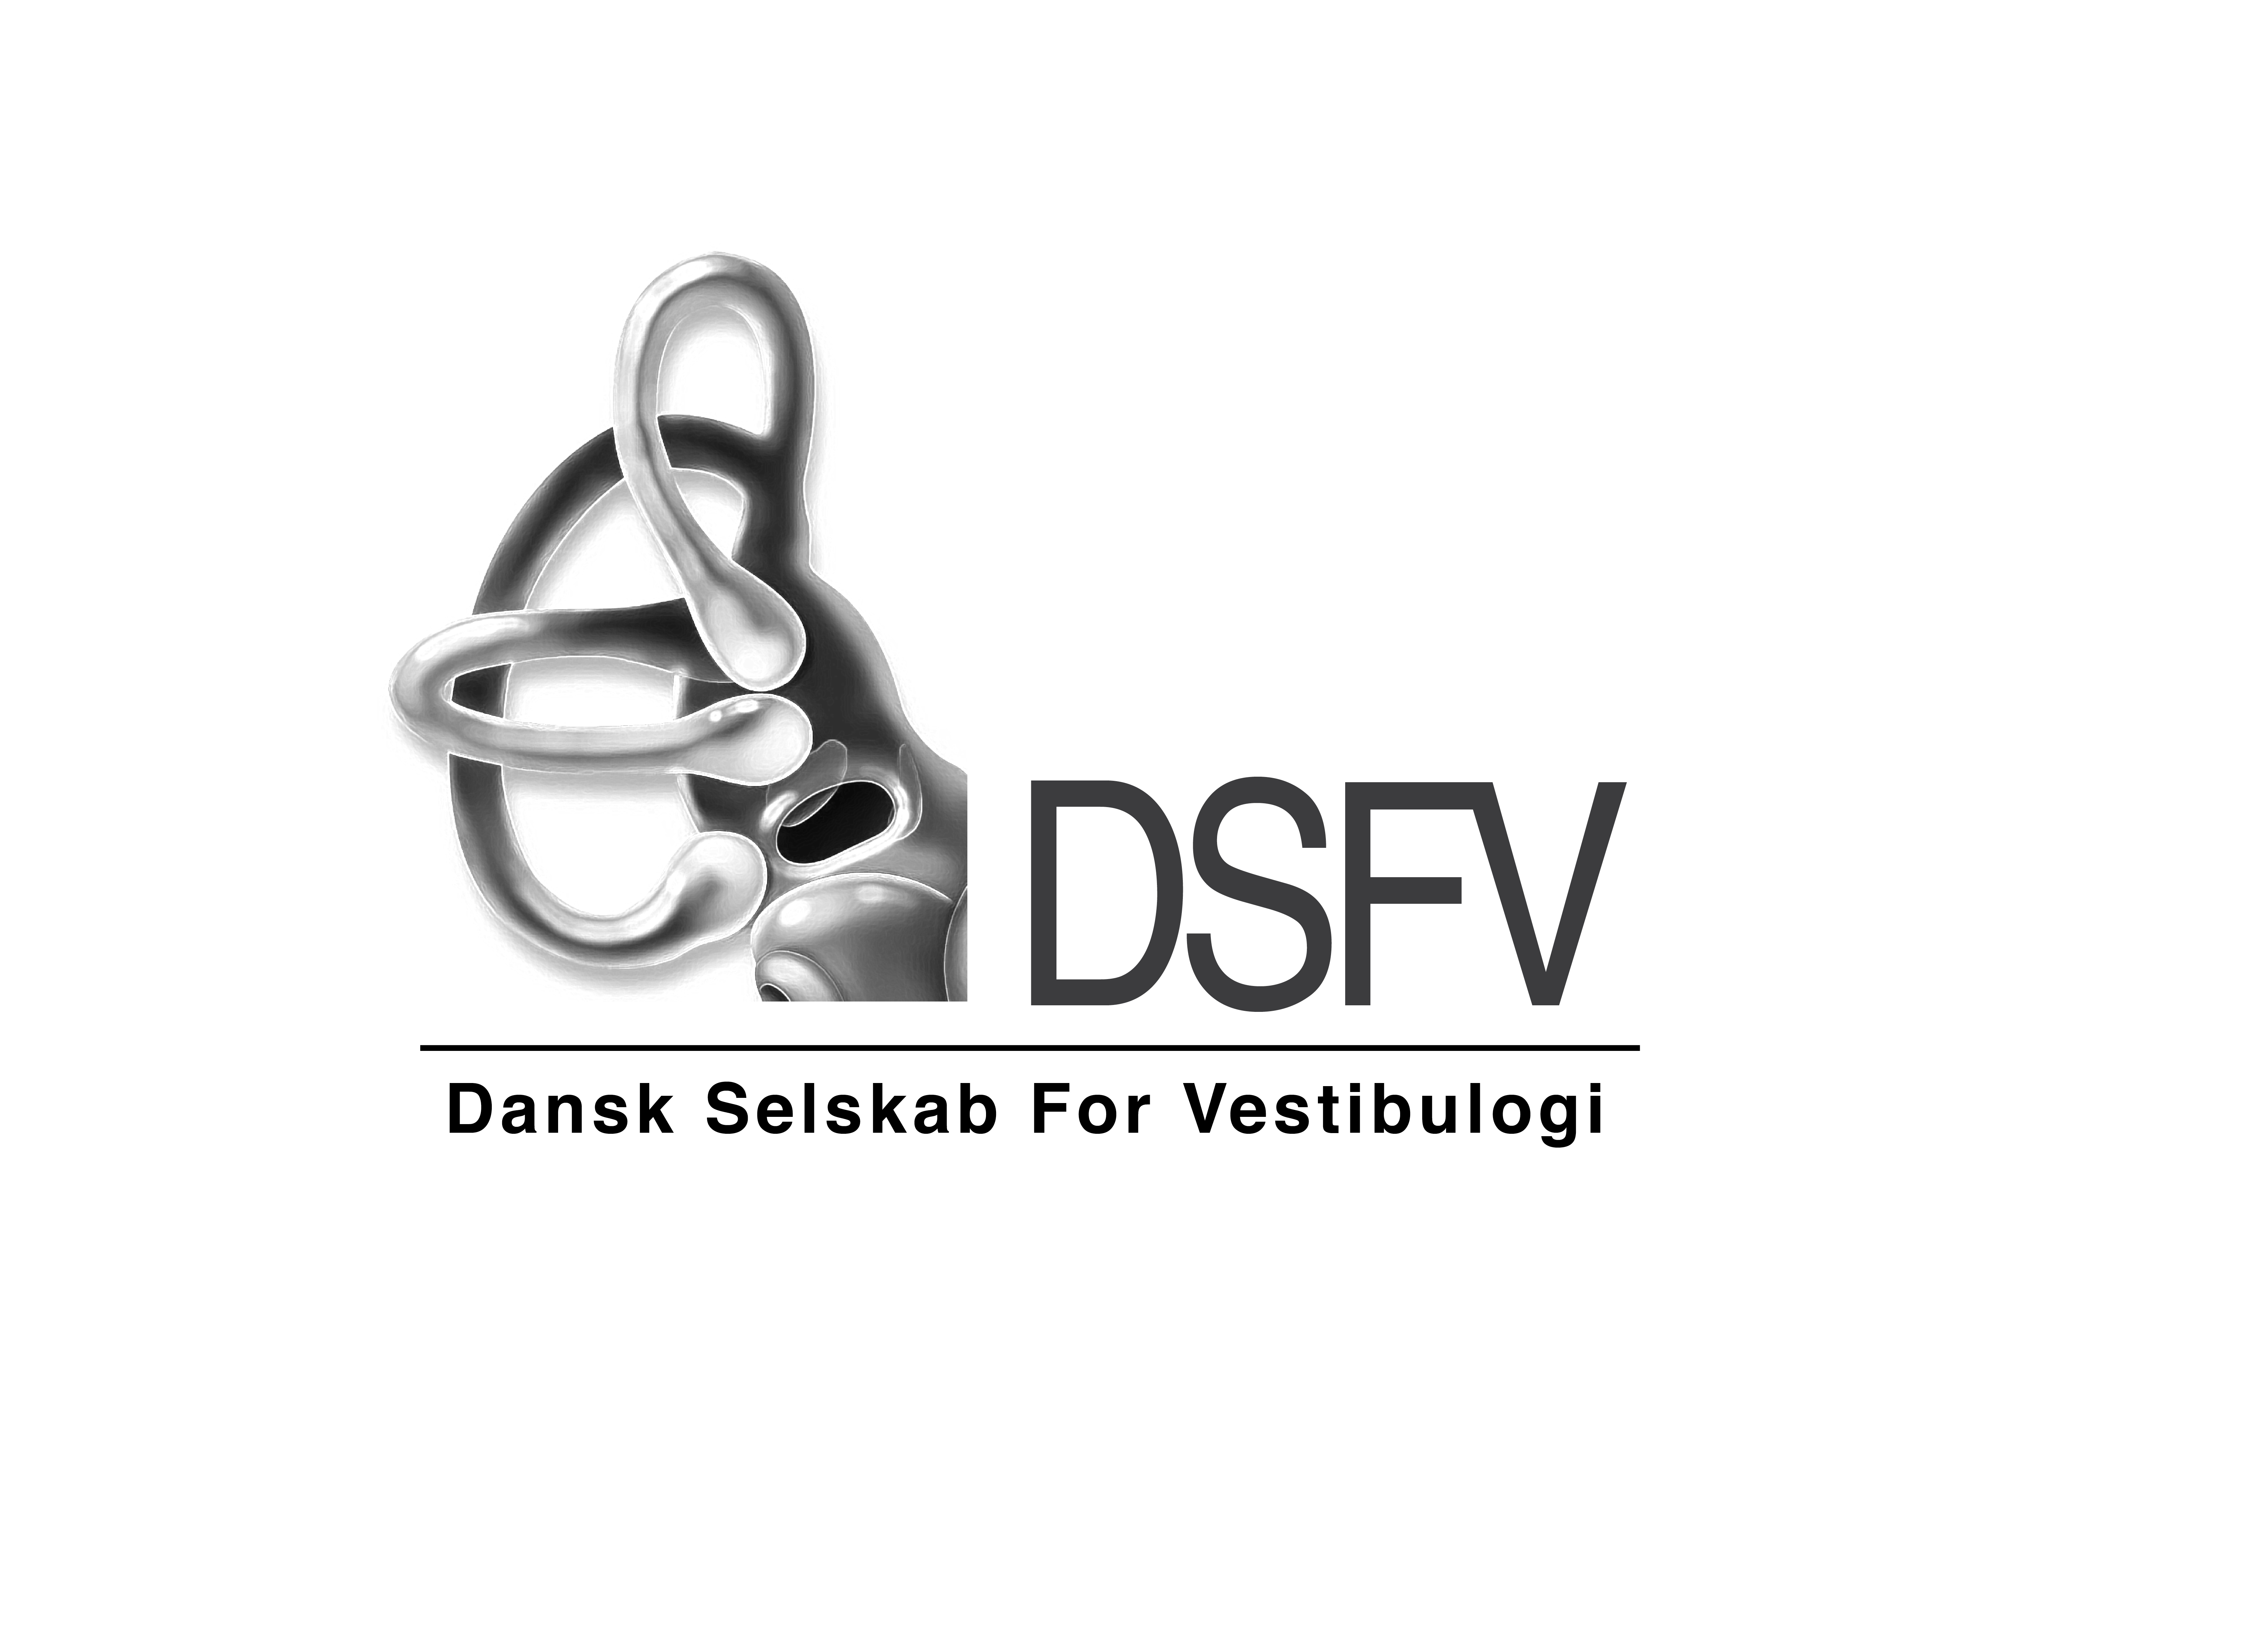 DSFV